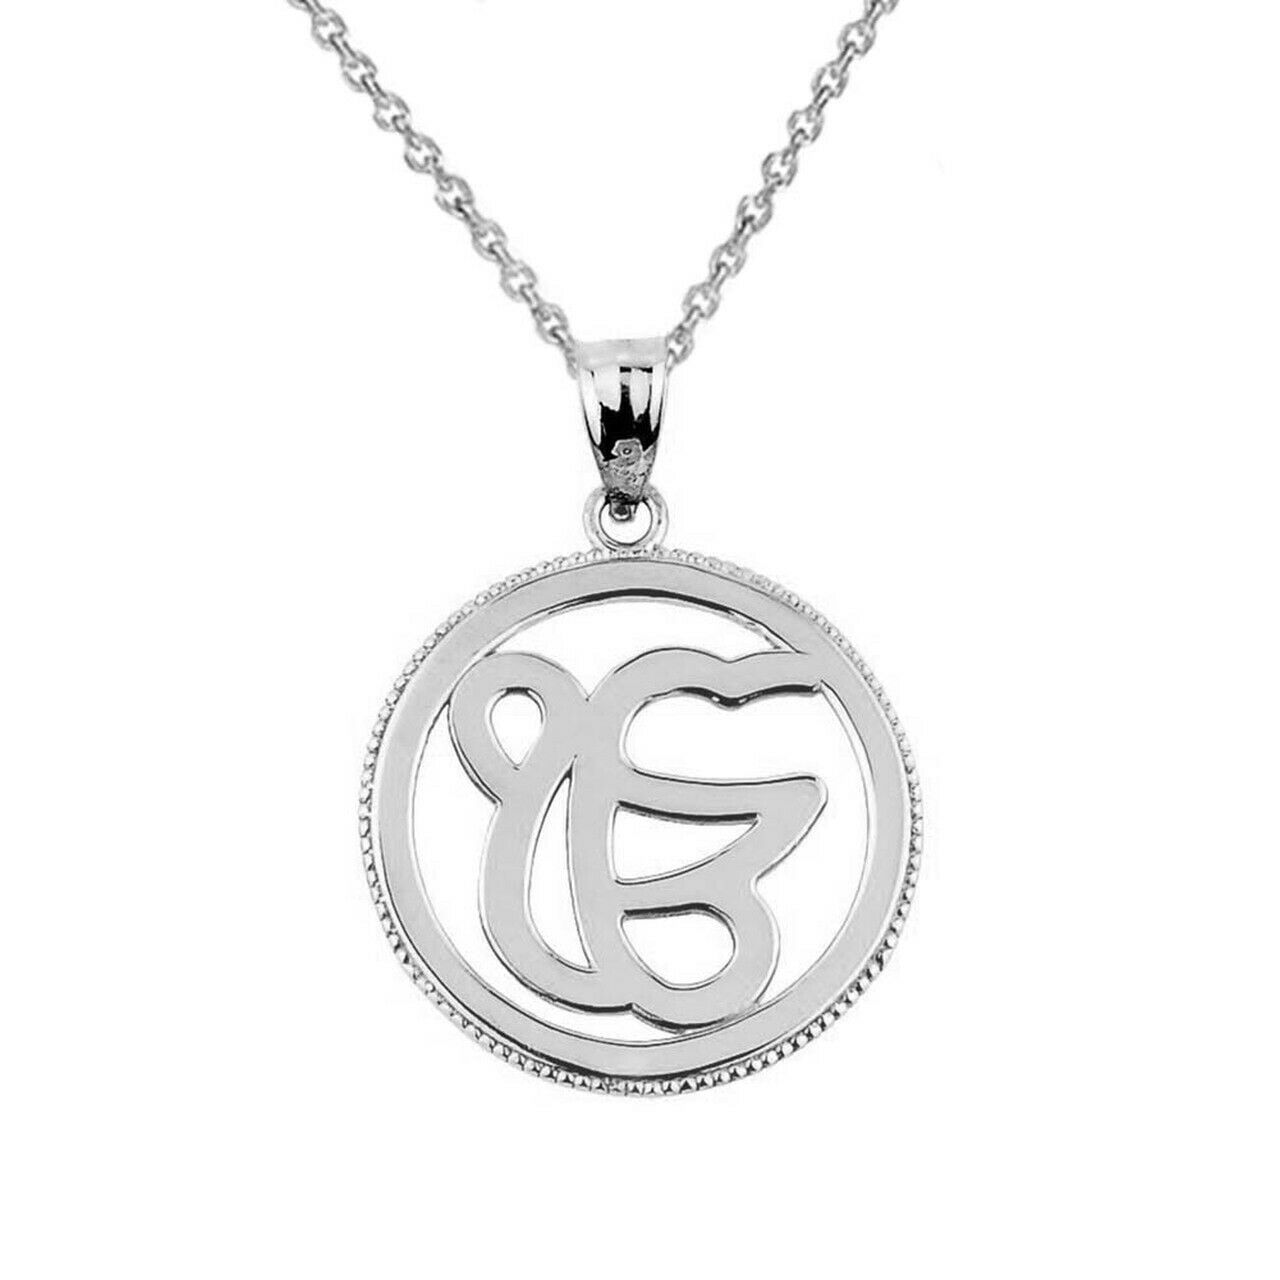 925 Sterling Silver Ek/Ik Onkar Pendant Necklace - The unity of god in Sikhism